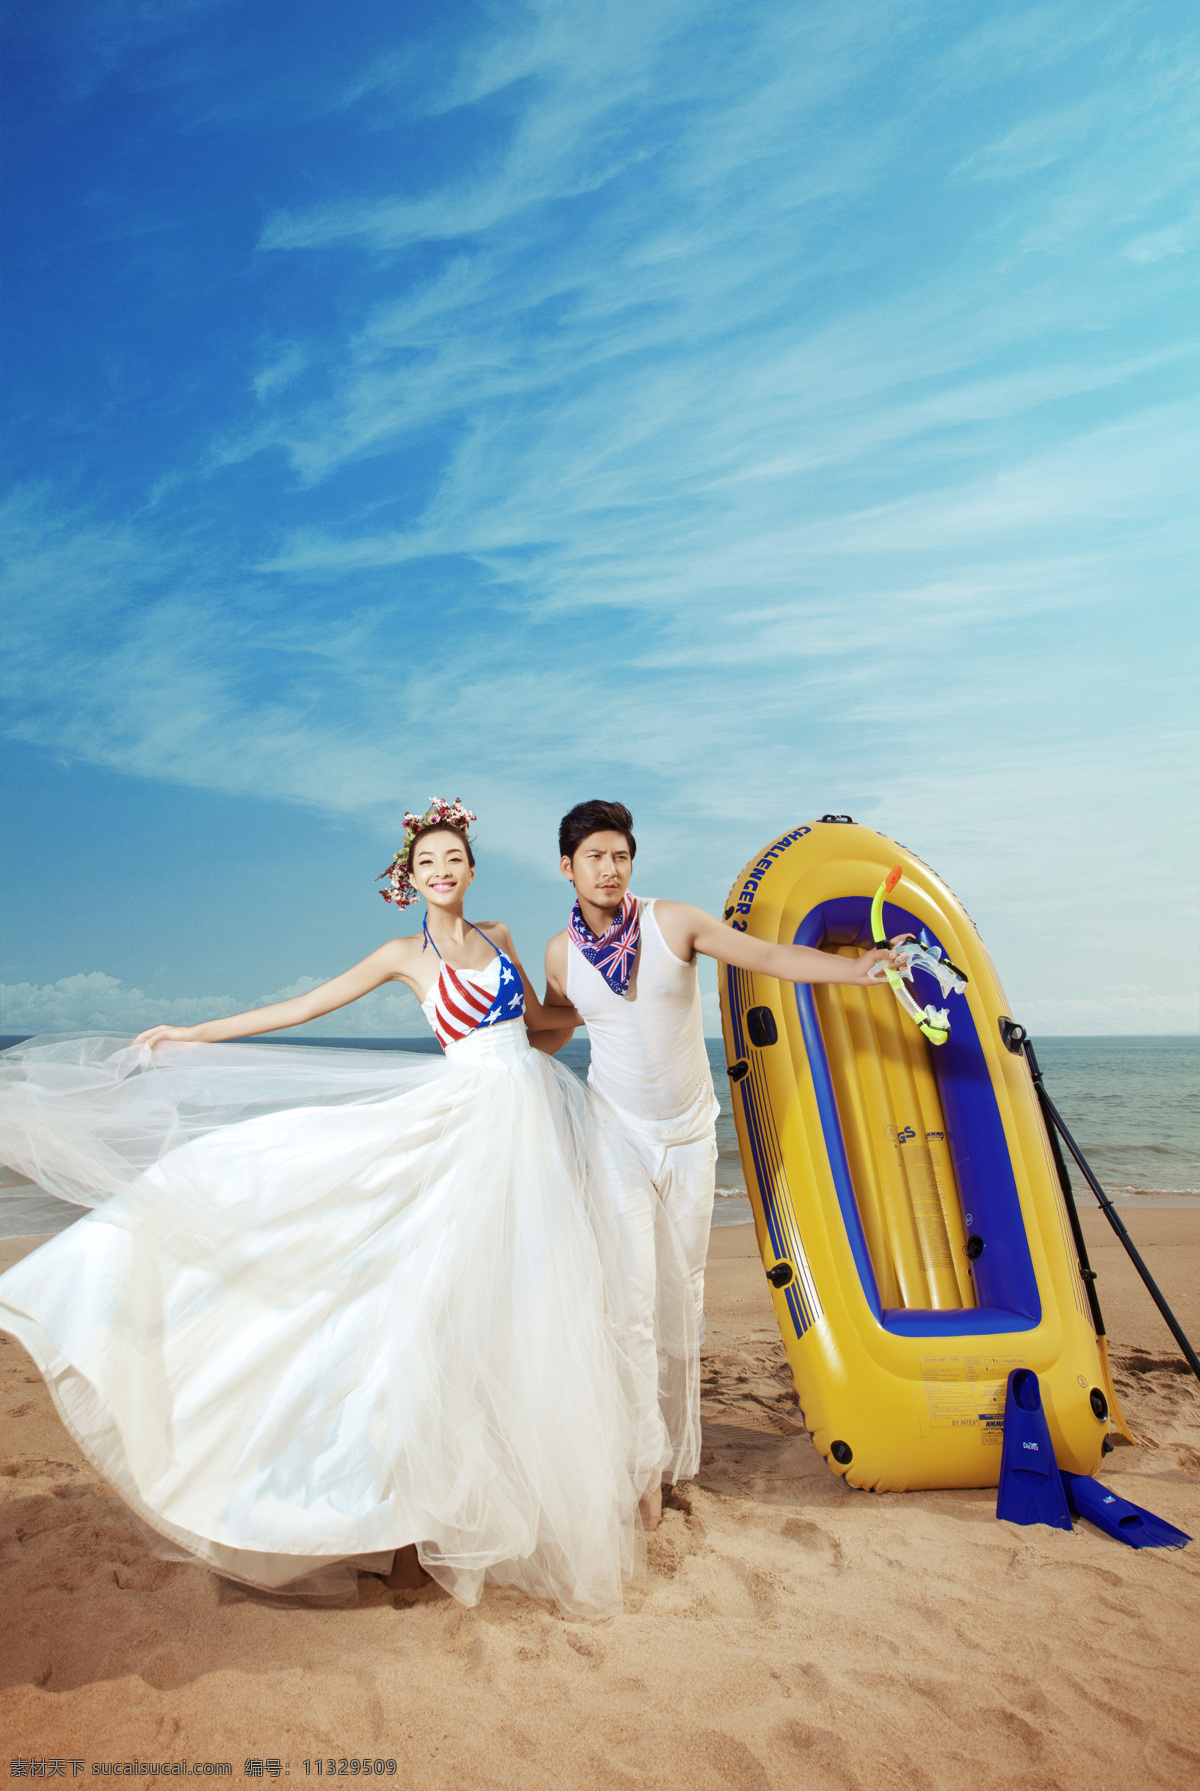 沙滩 上 新人 情侣 新人情侣 帅哥美女 新郎新娘 结婚照 婚纱摄影 汽艇 大海 情侣图片 人物图片